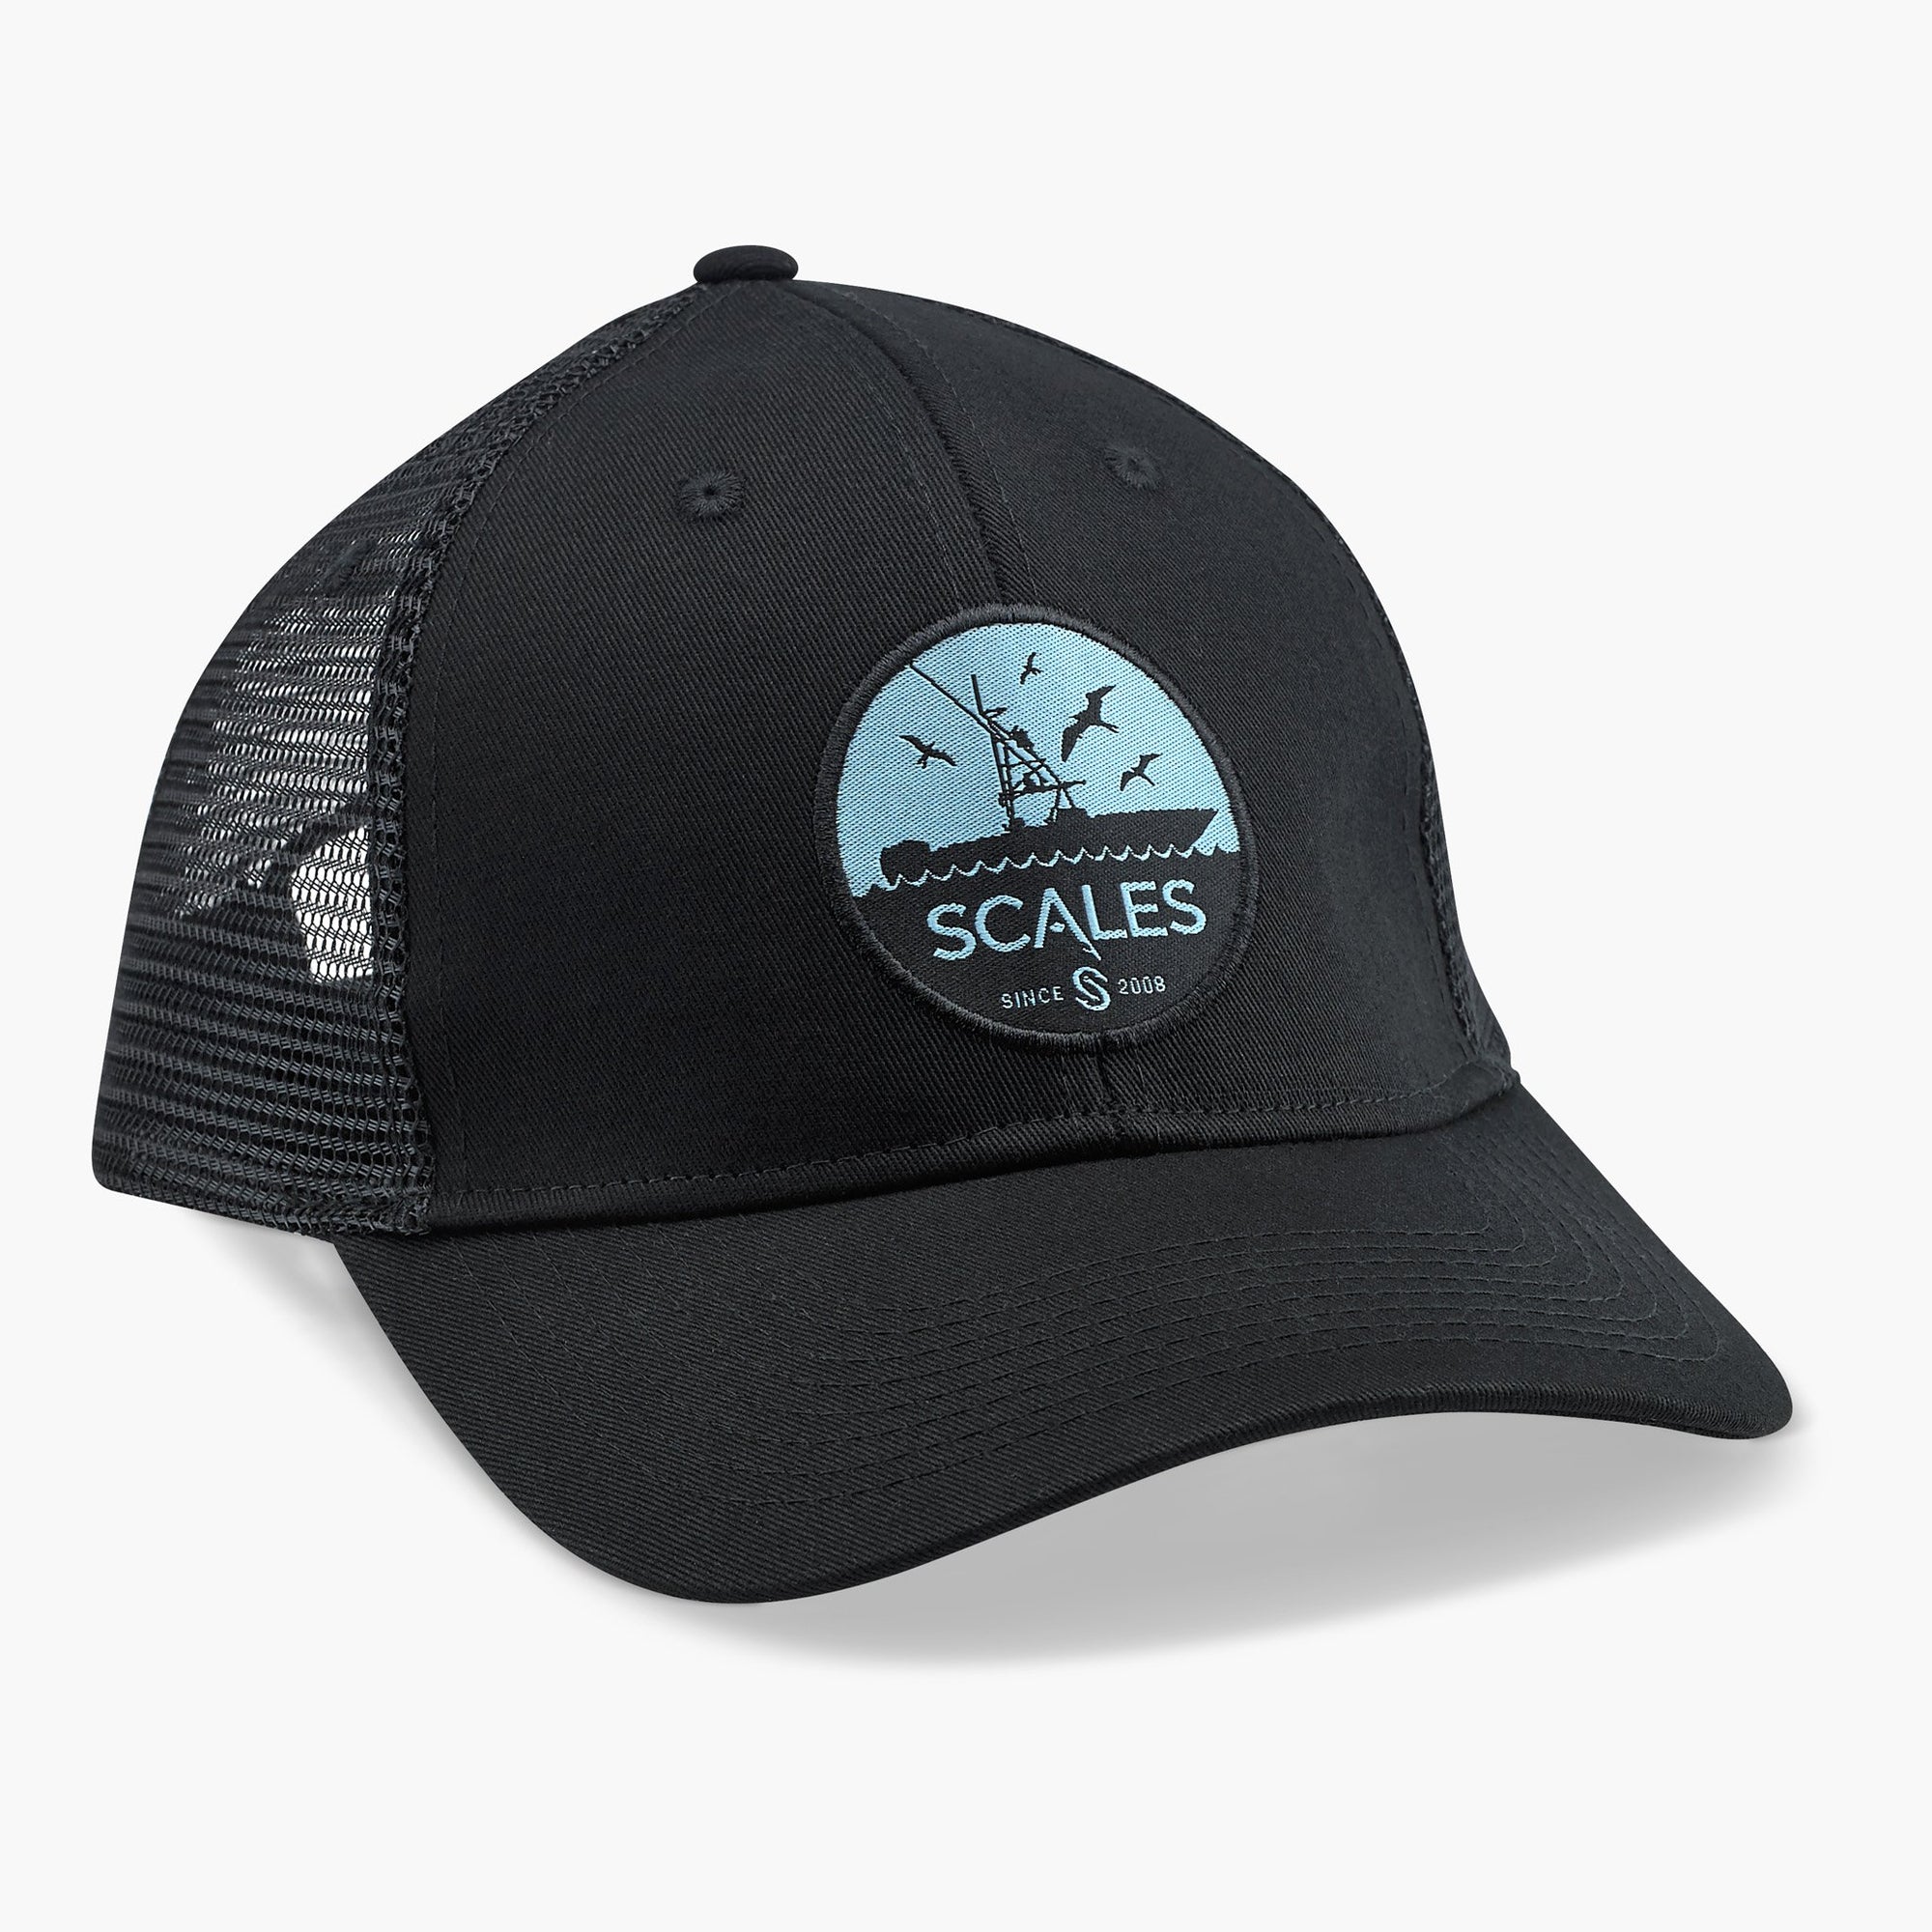 Scales Gear Frenzy Trucker Black Cap